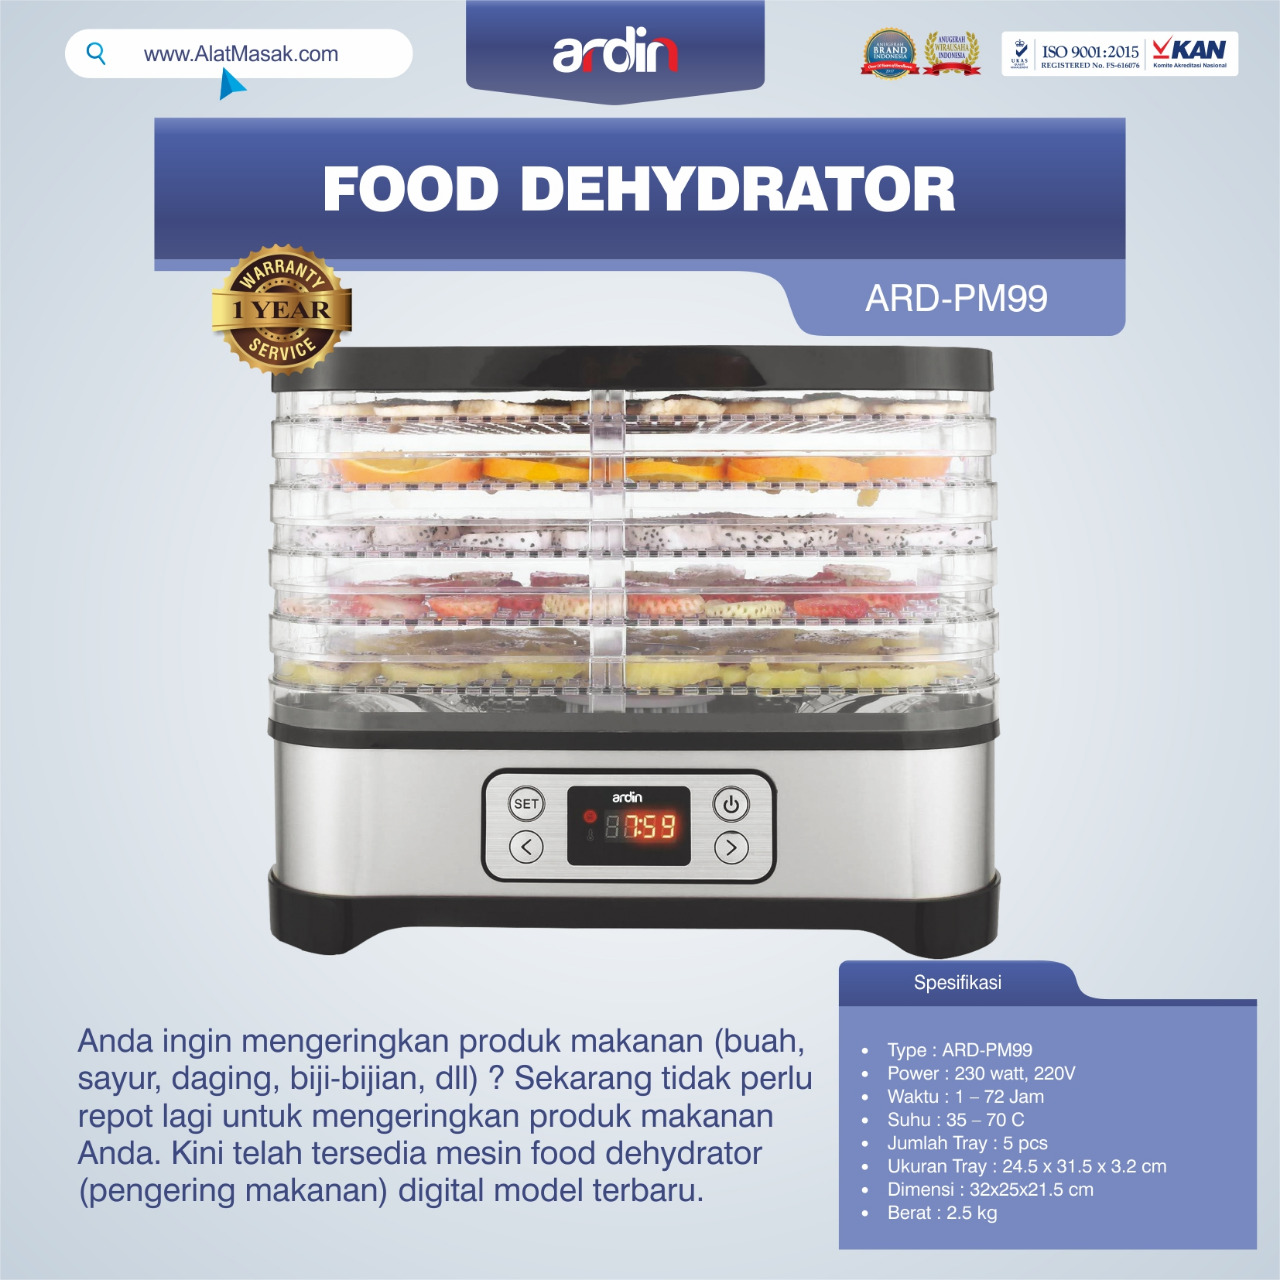 Jual Food Dehydrator ARD-PM99 di Semarang